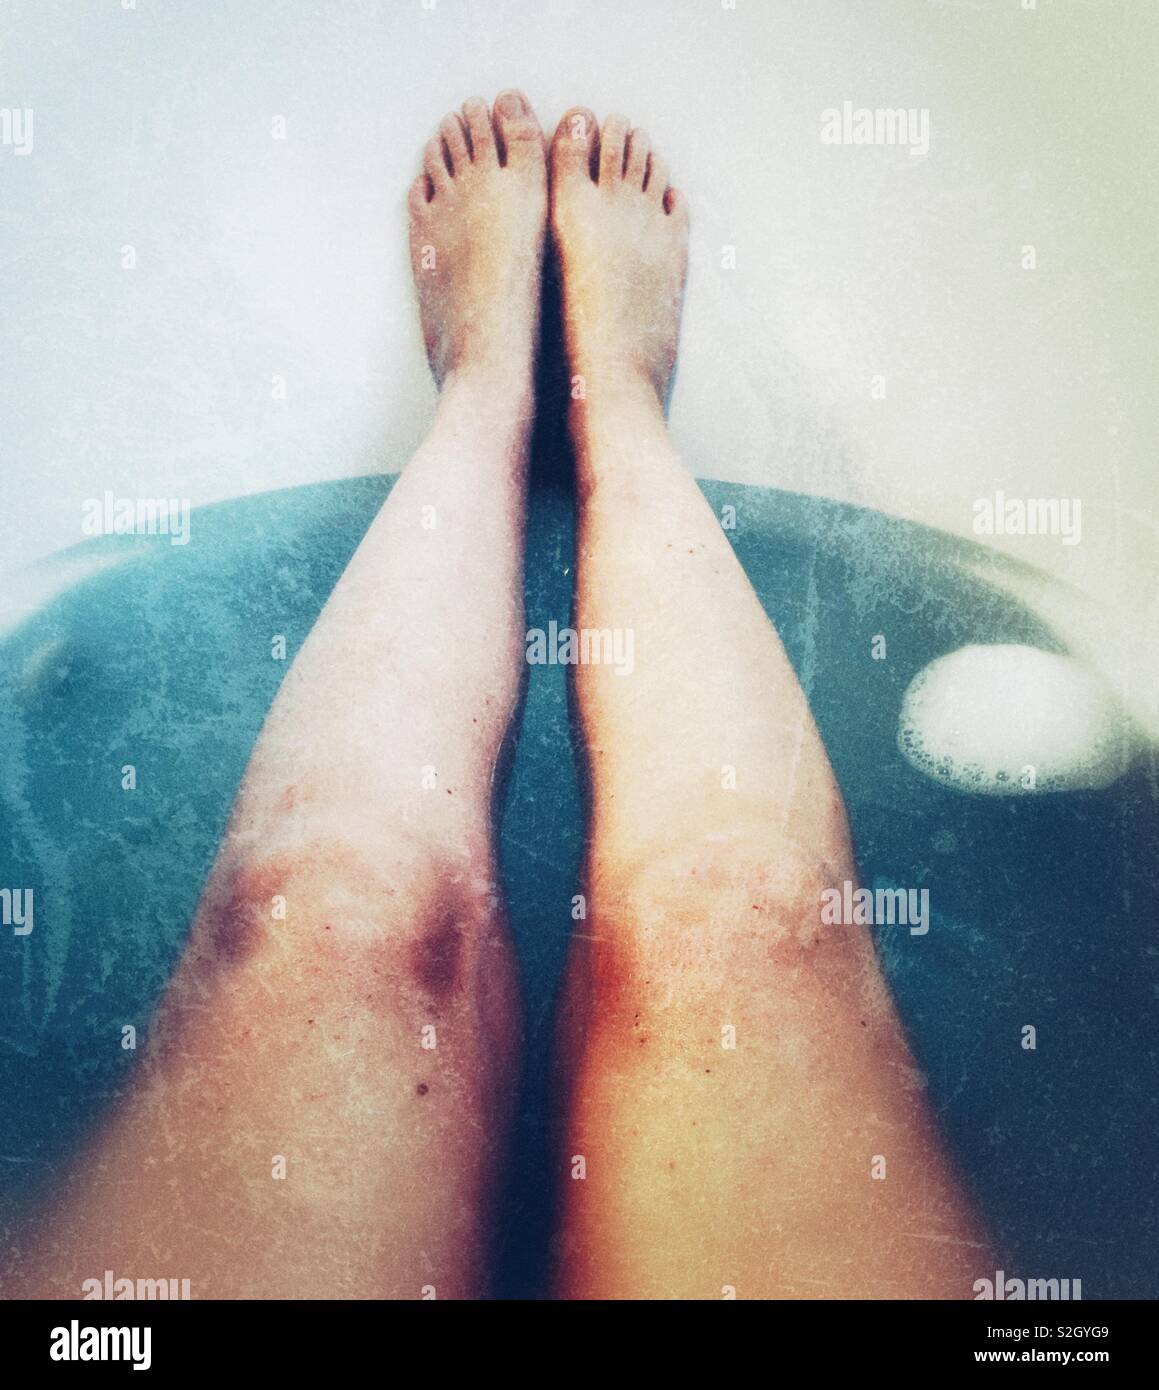 Les jambes dans une baignoire avec de l'eau bleue Banque D'Images